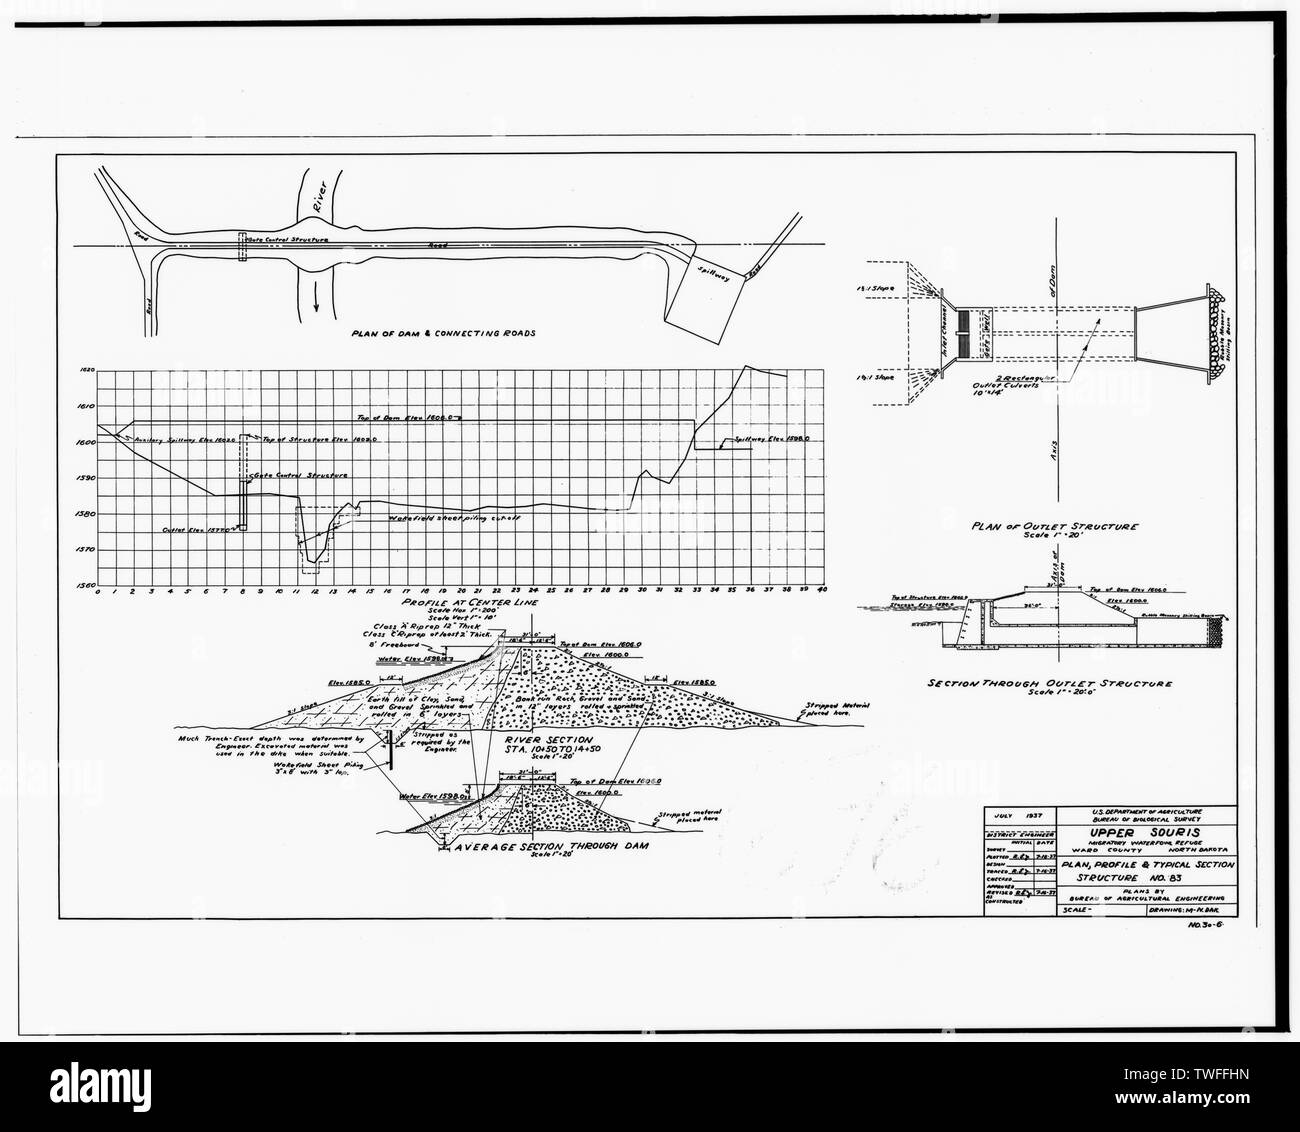 PLAN, Profil et structure typique de l'article no 83. 16 juillet 1937 - La Souris National Wildlife Refuge, 83 barrage, bassin de la rivière Souris, Foxholm, comté de Ward, ND Banque D'Images